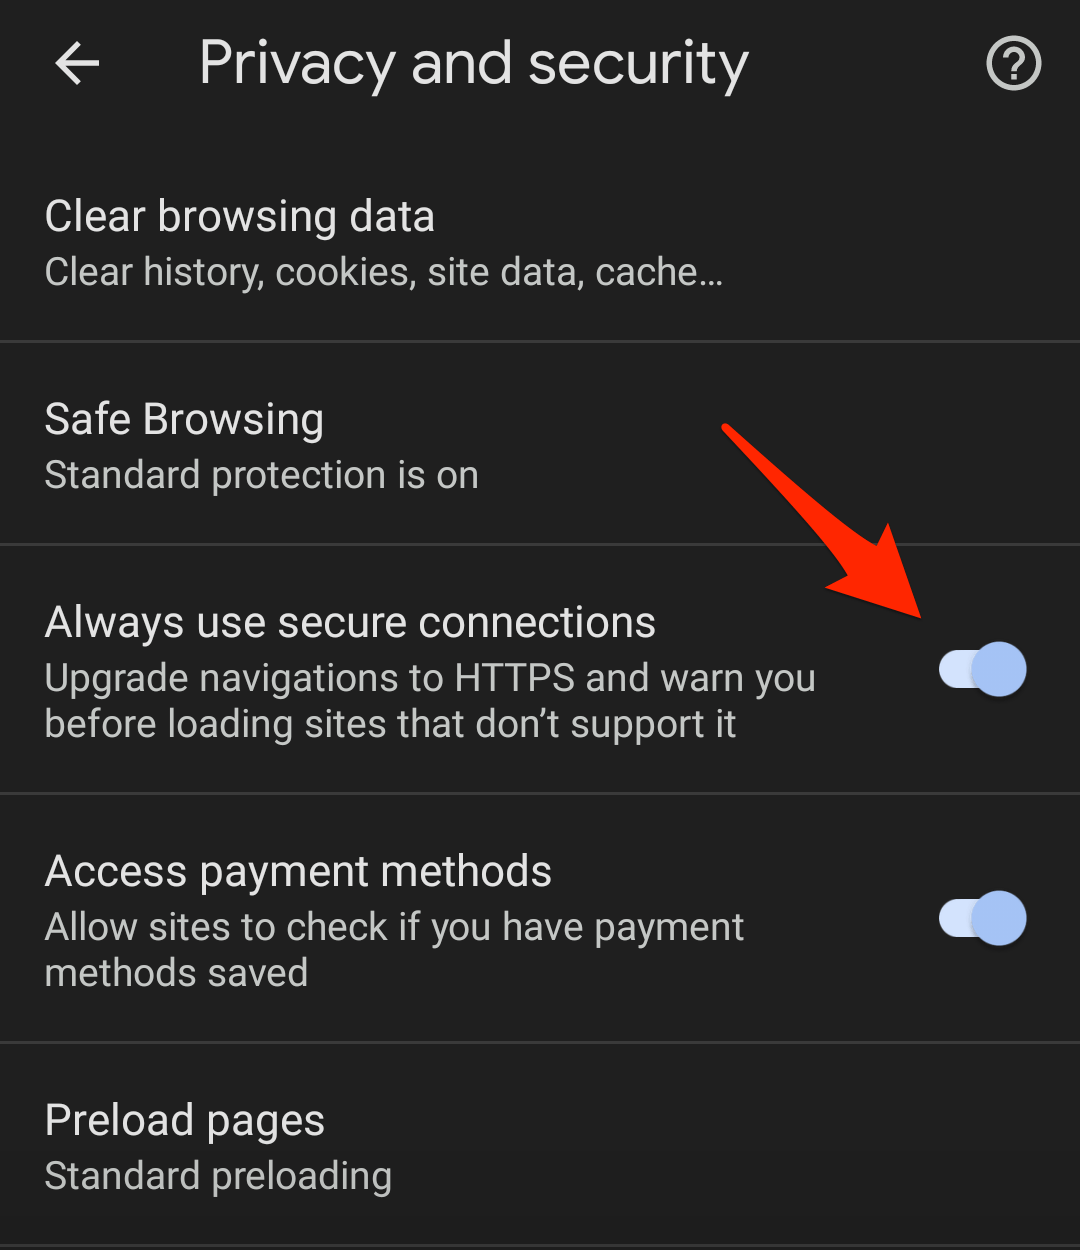 Luôn sử dụng các kết nối an toàn được BẬT trong Chrome Android